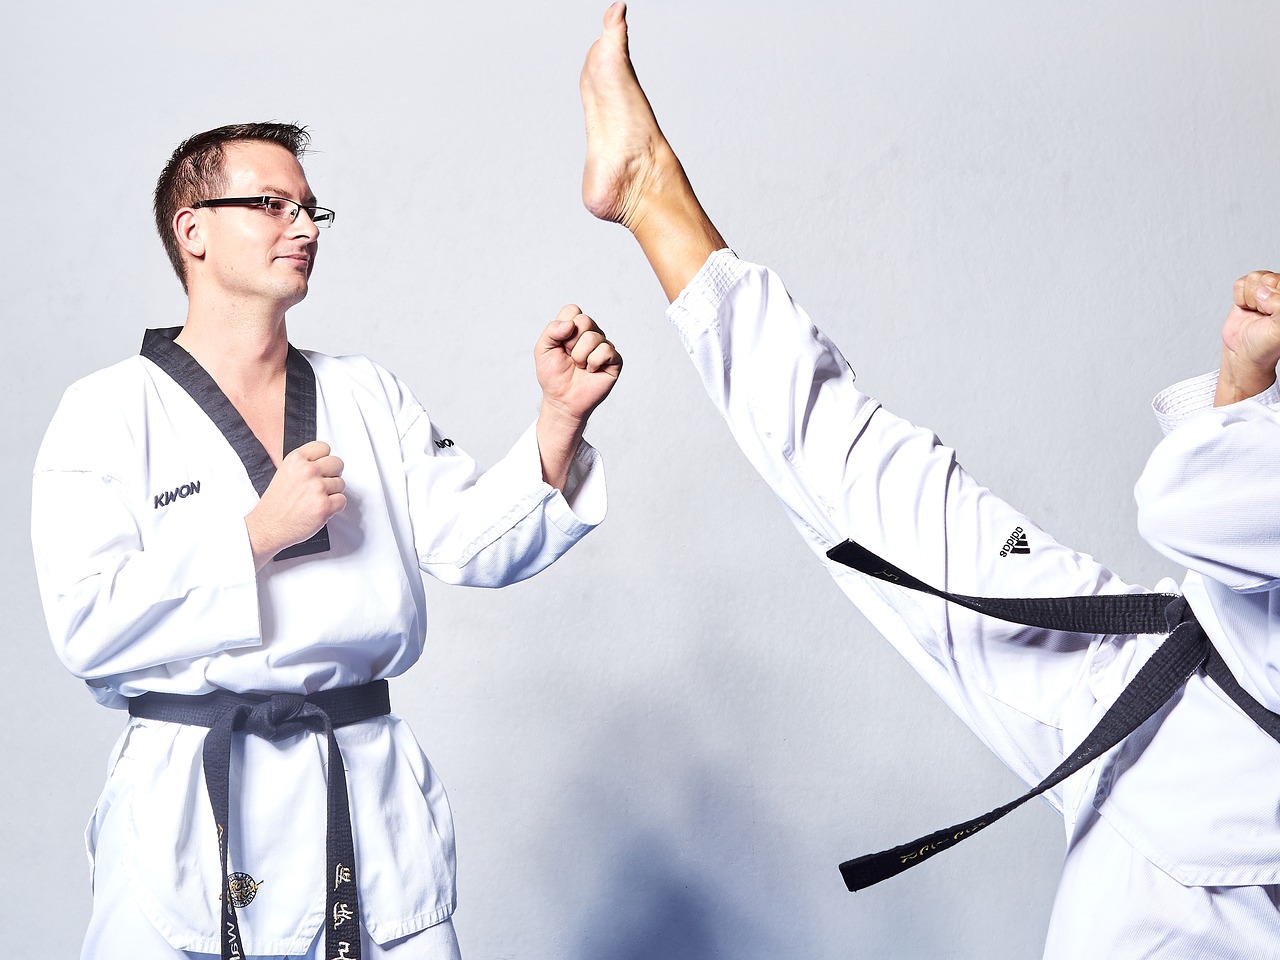 taekwondo fight kick free photo